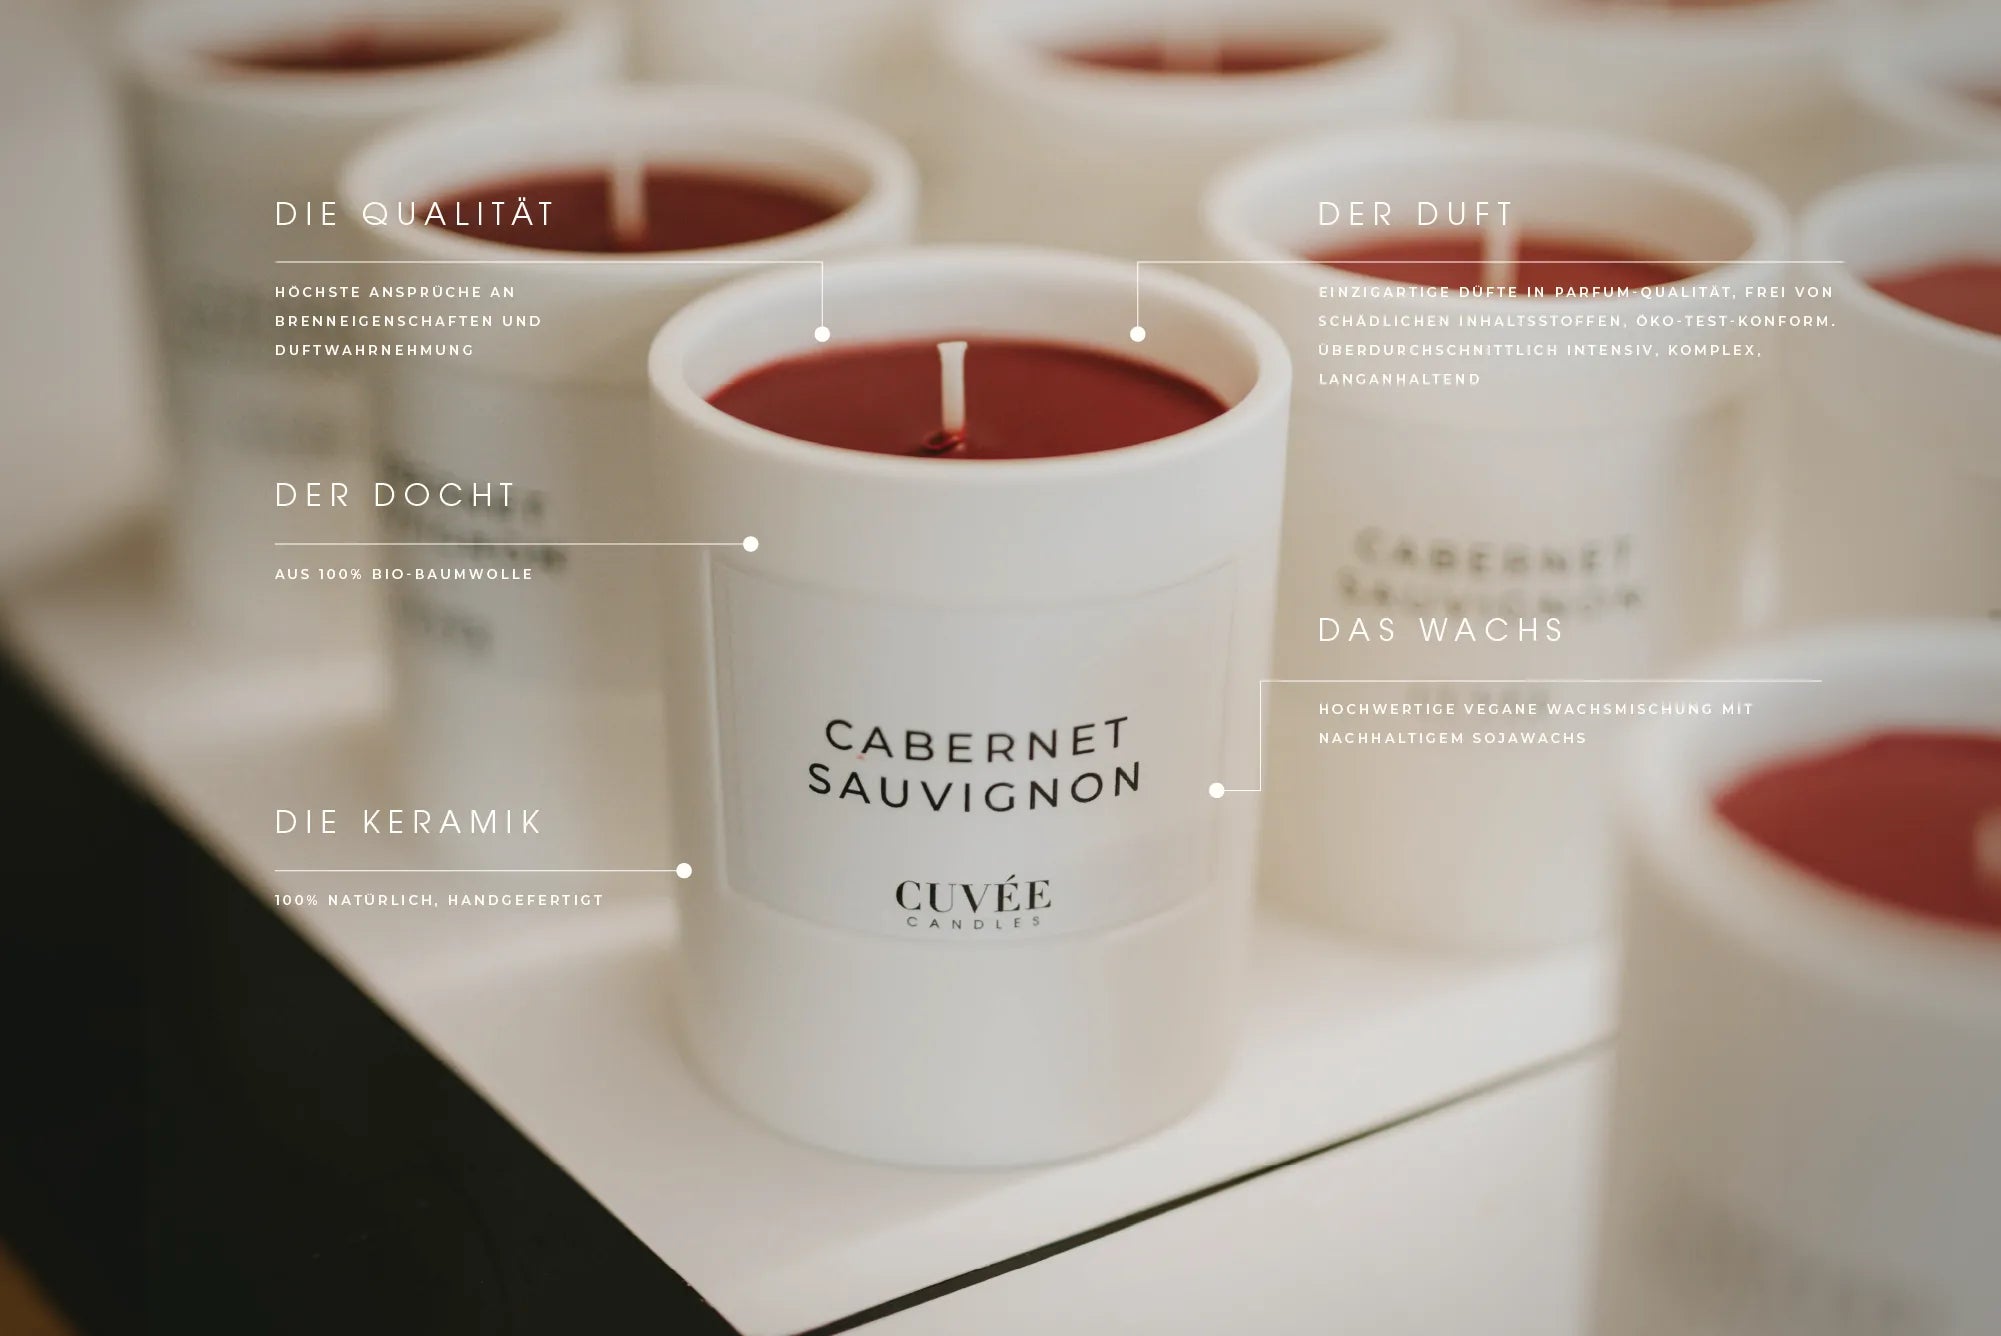 Cuvée Candles Duftkerzen Keramik hochwertige Kerzen Sojawachs vegan RAL-Qualitätsstandardkerze Öko-Test-konform Bio-Baumwolldocht handgemacht handgegossen hergestellt in Europa Düsseldorf 60 Stunden Brenndauer